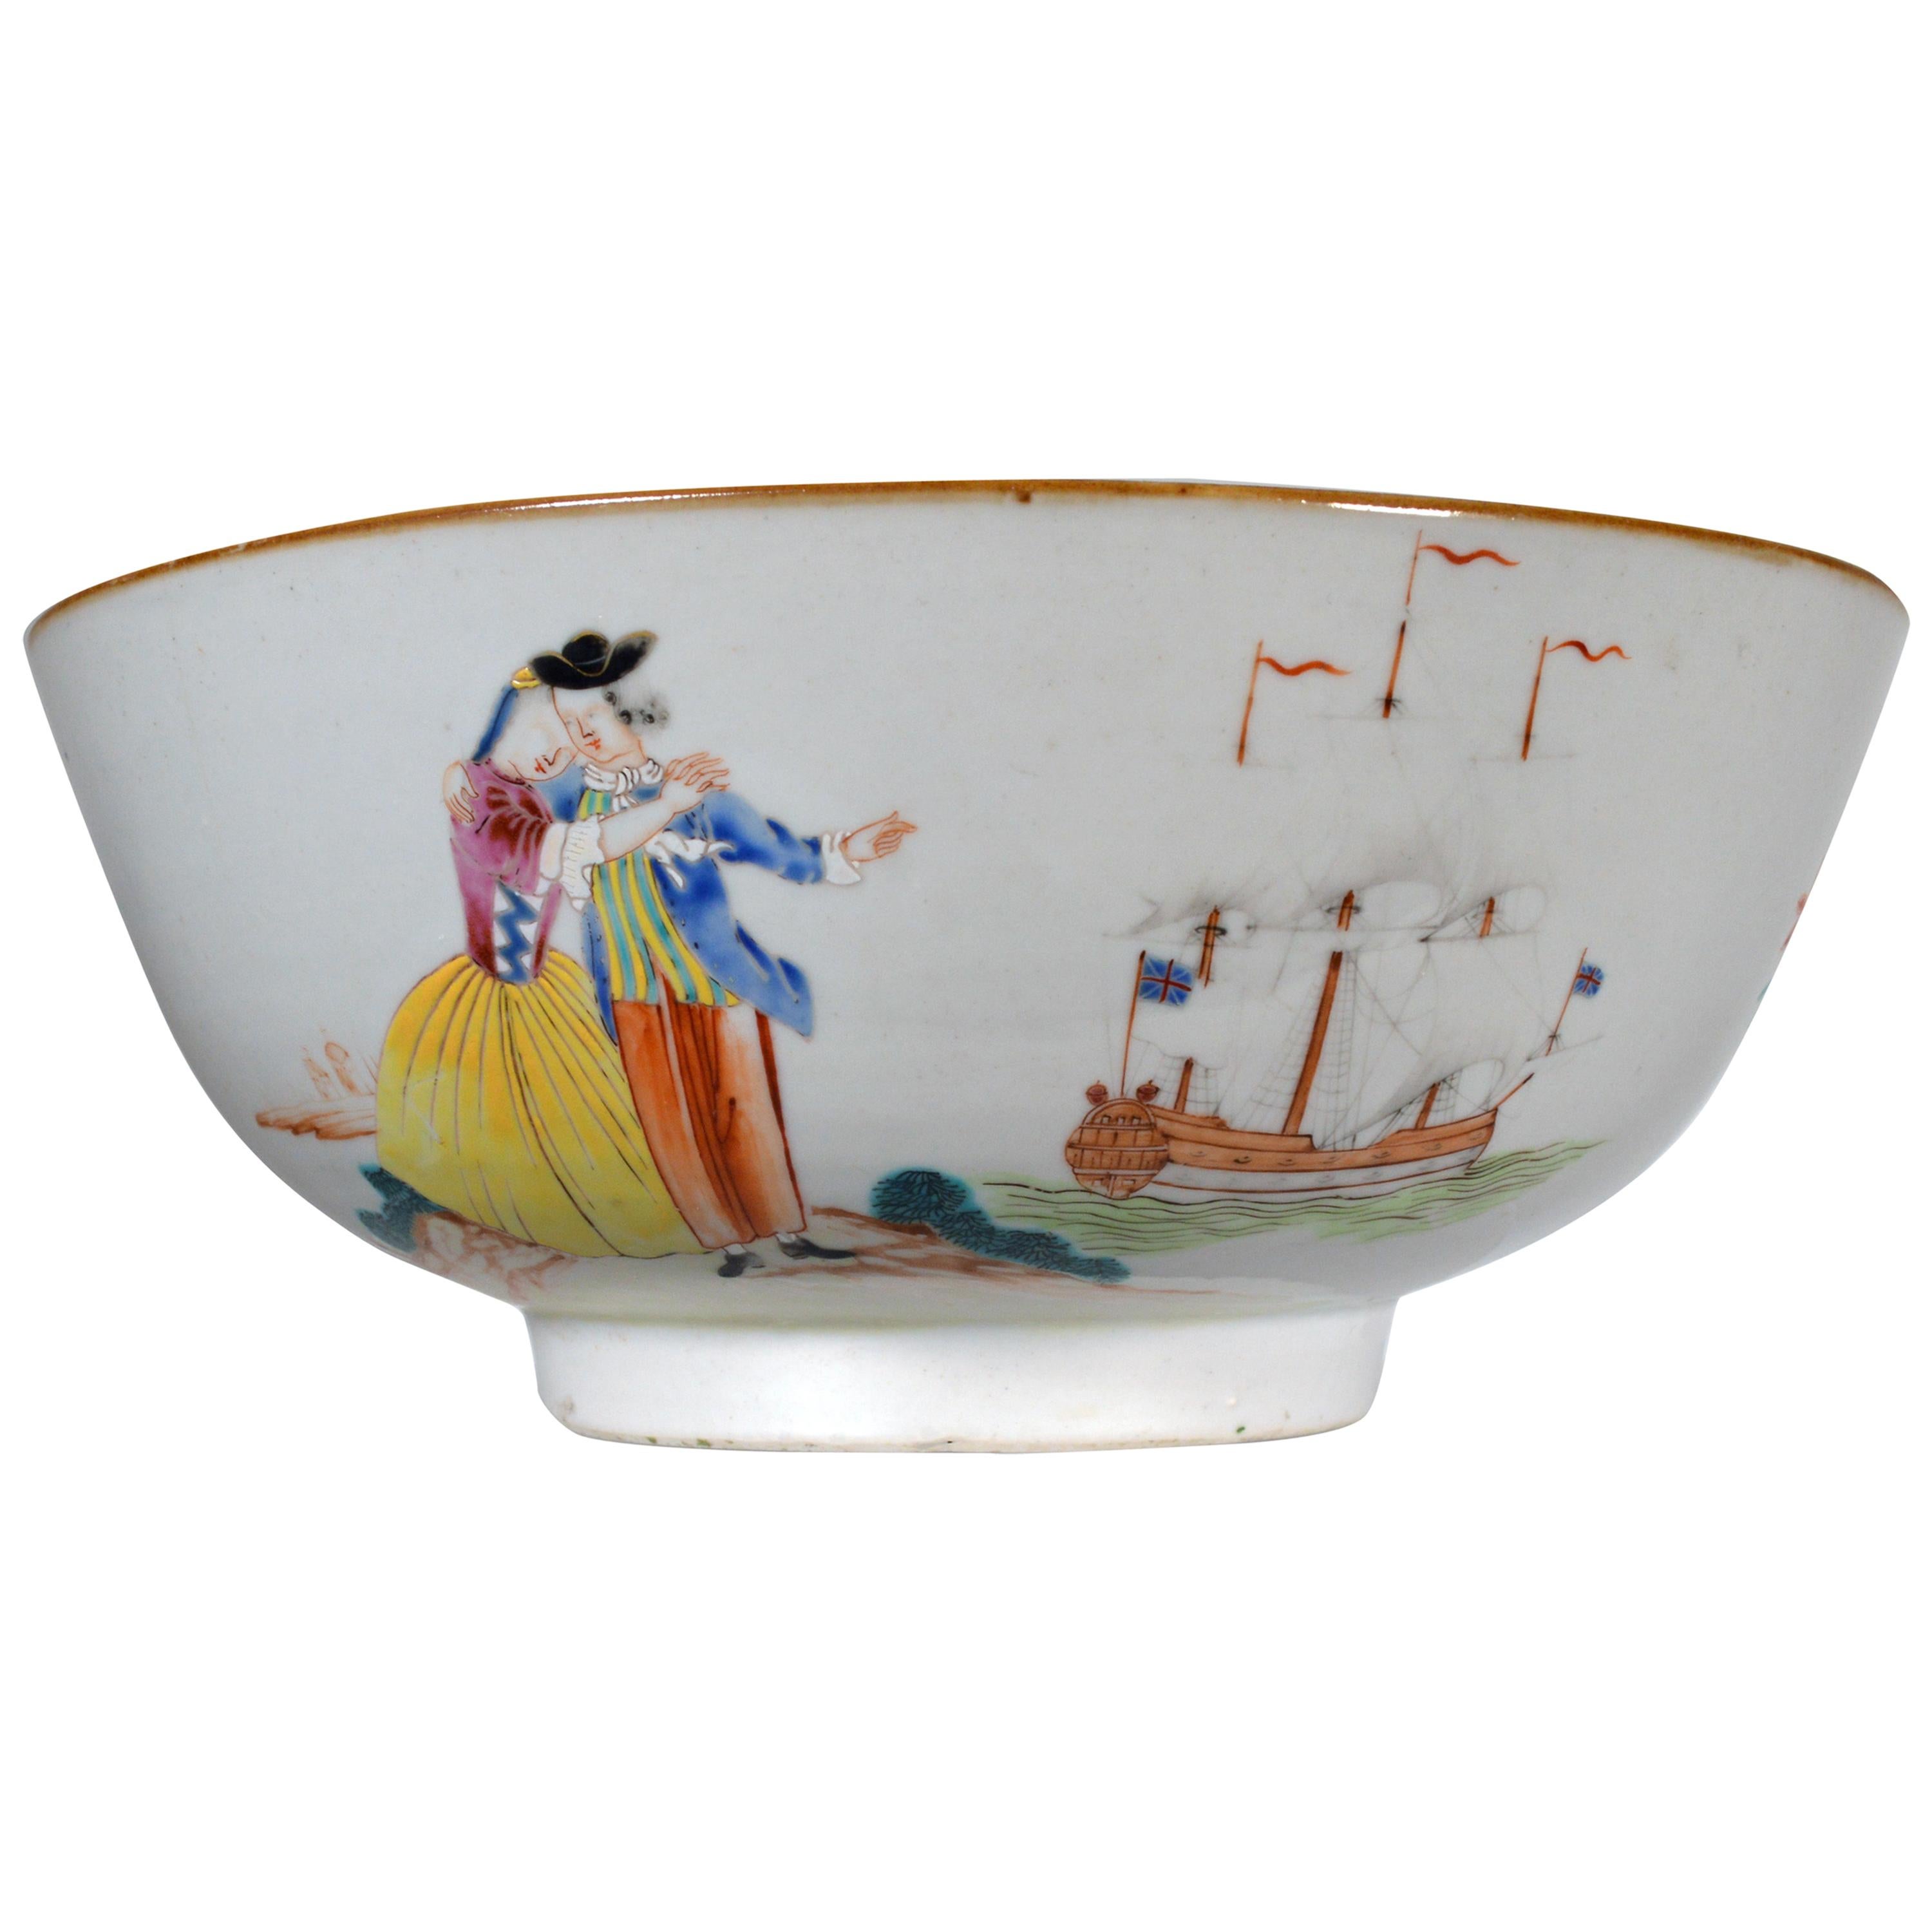 Bol à punch en porcelaine d'exportation chinoise à sujet européen,
Adieu au marin et bol de retour avec un navire de la Royal Navy,
vers 1765-1775.

Ce bol en porcelaine d'exportation chinoise présente deux images d'un marin et de sa femme :